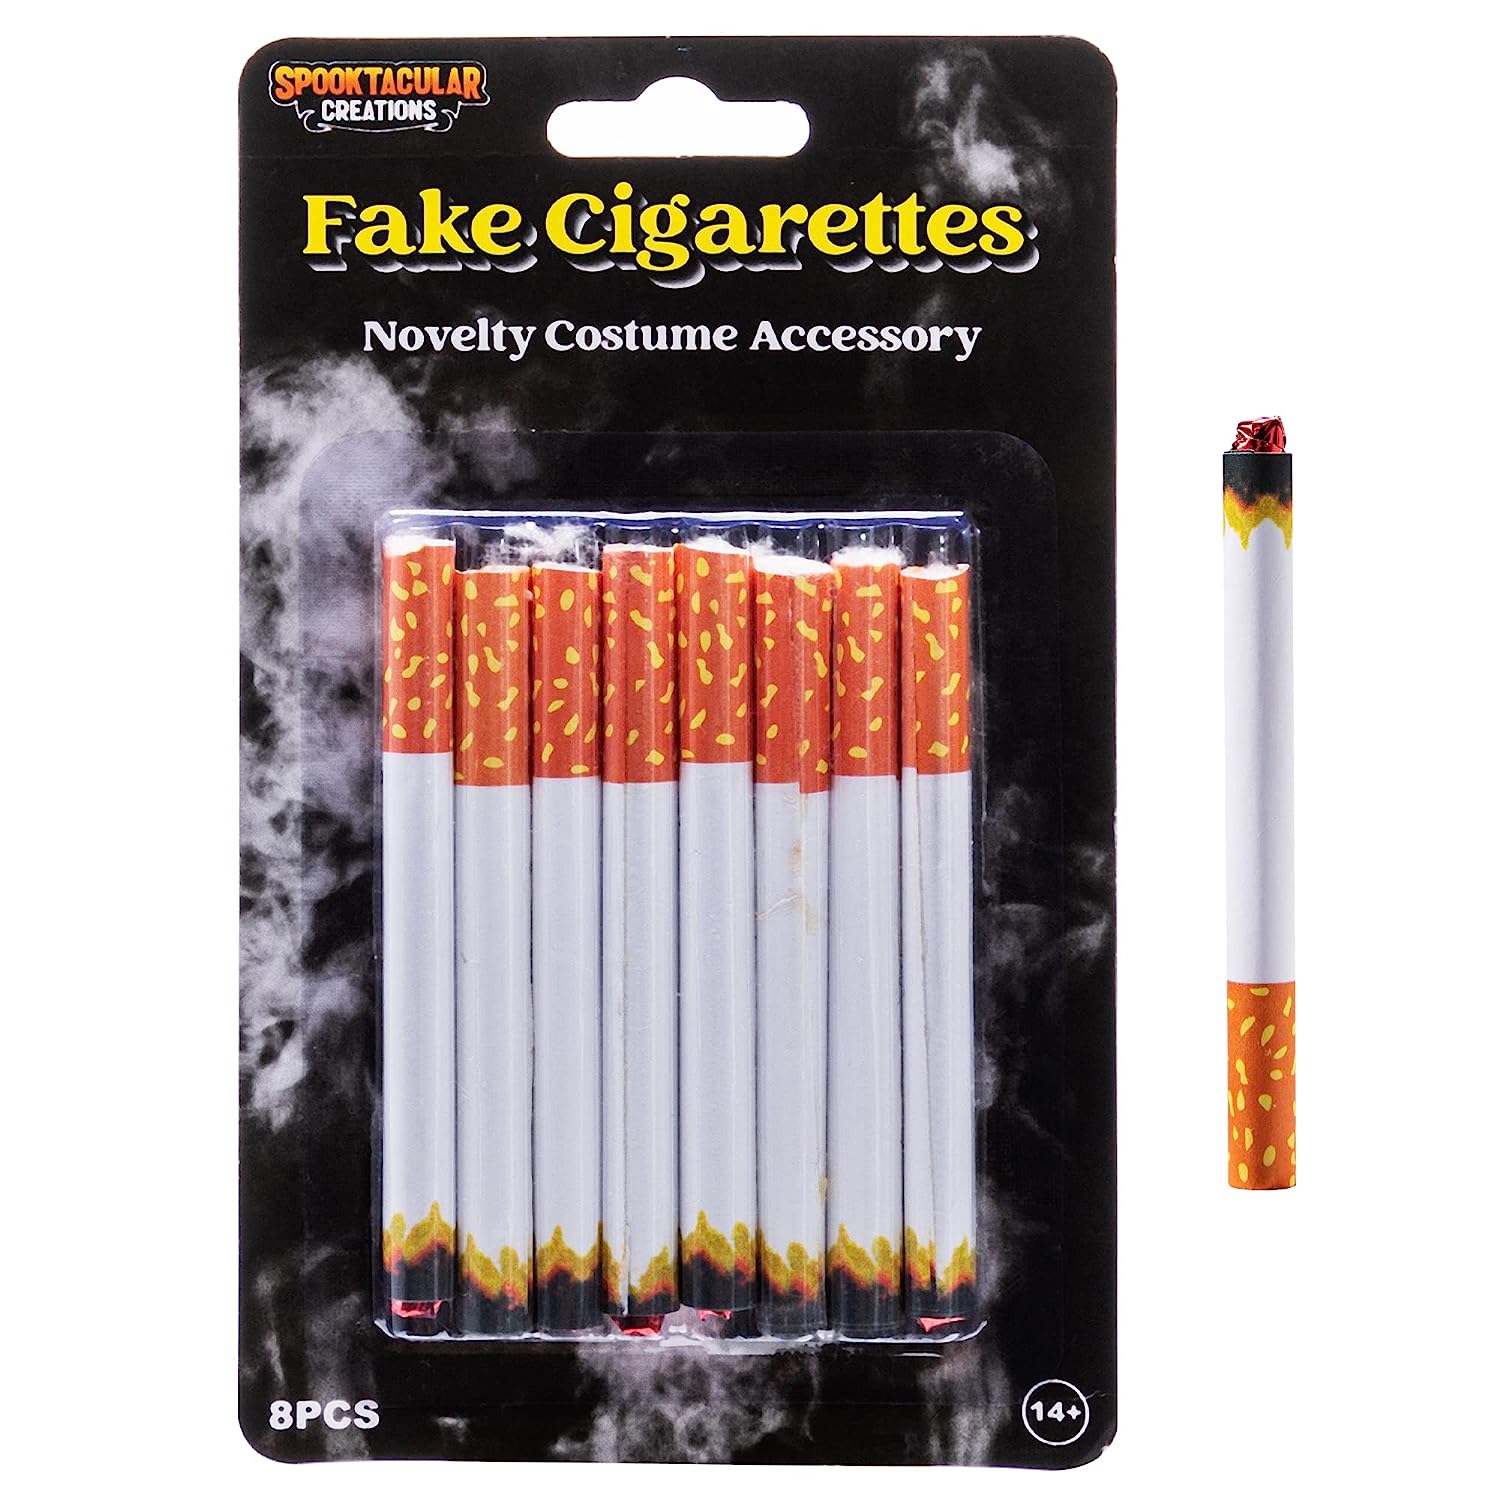 Fake Puff Cigarettes